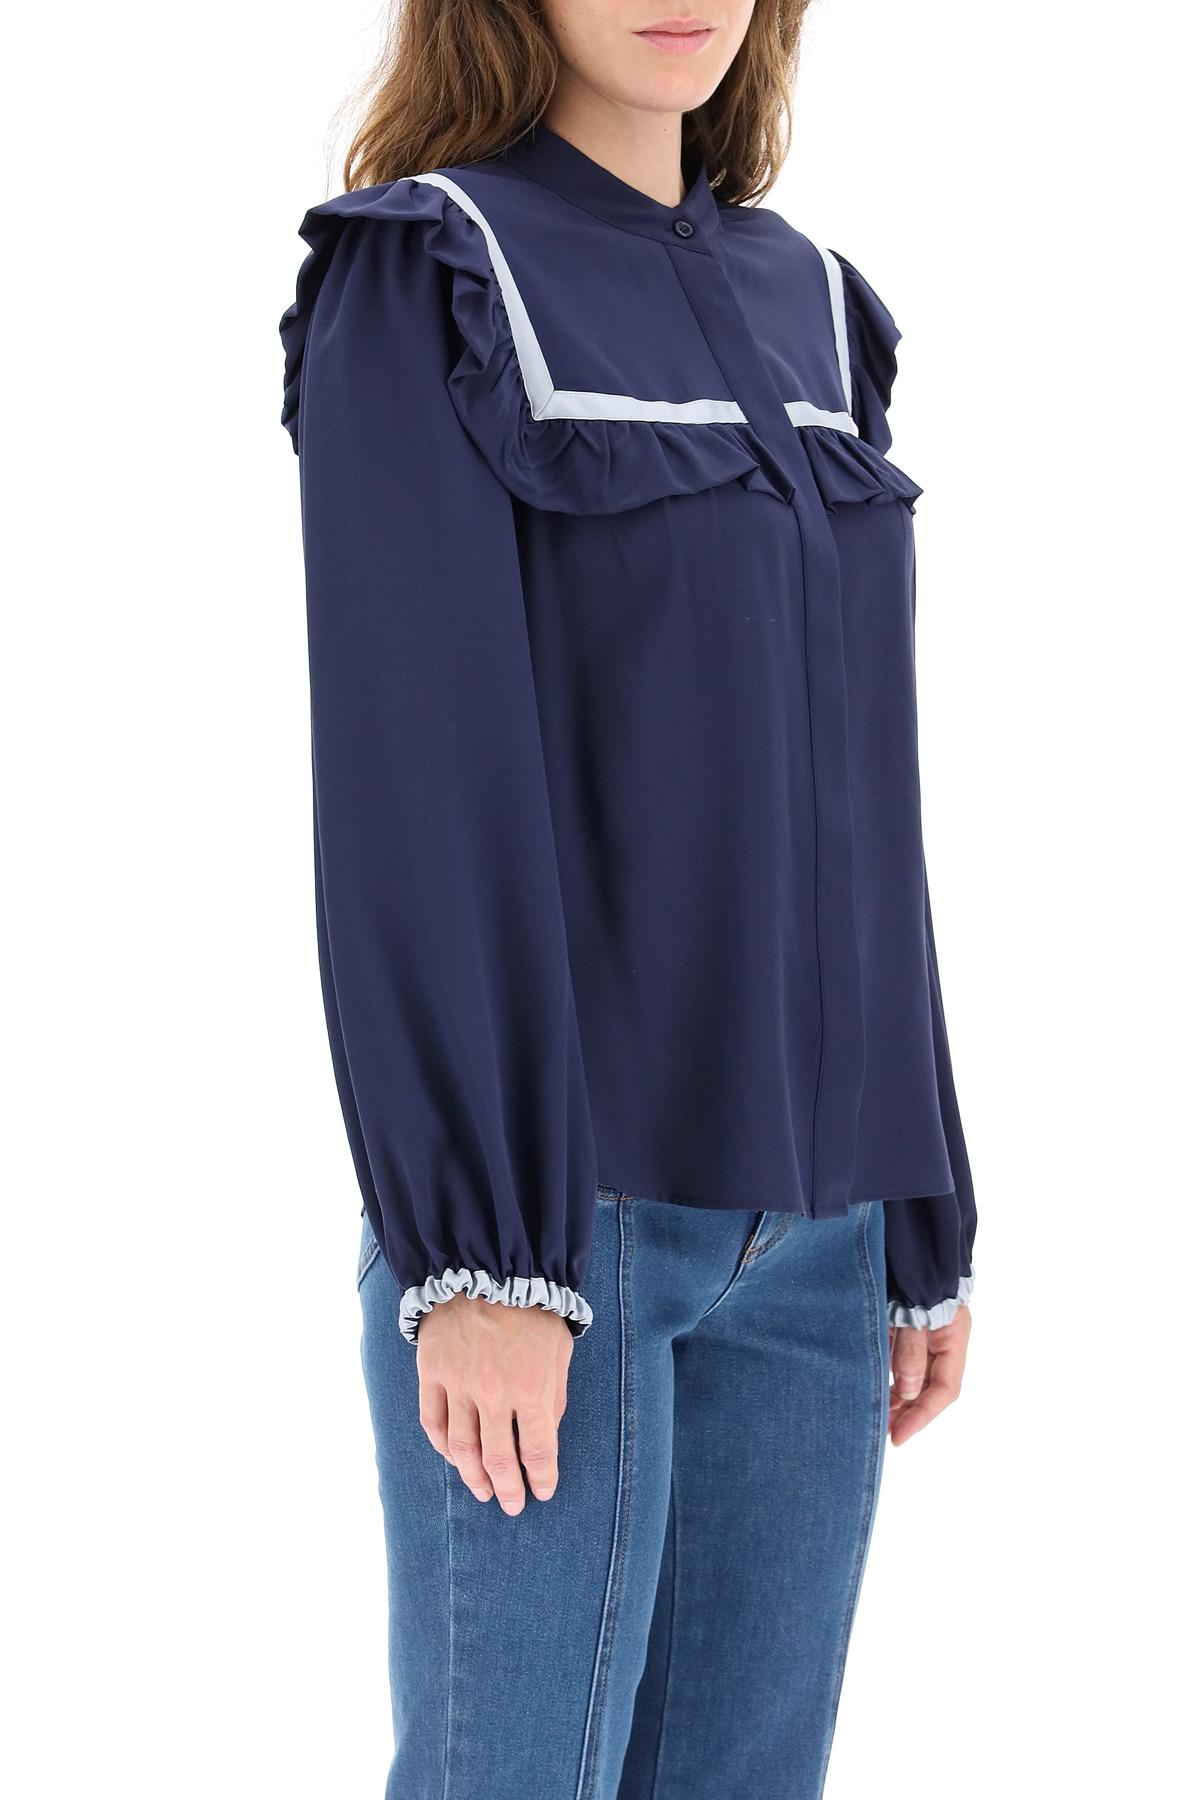 上品 See Shirt Silk Frilly Chloe By ブラウス・シャツ サイズを選択 